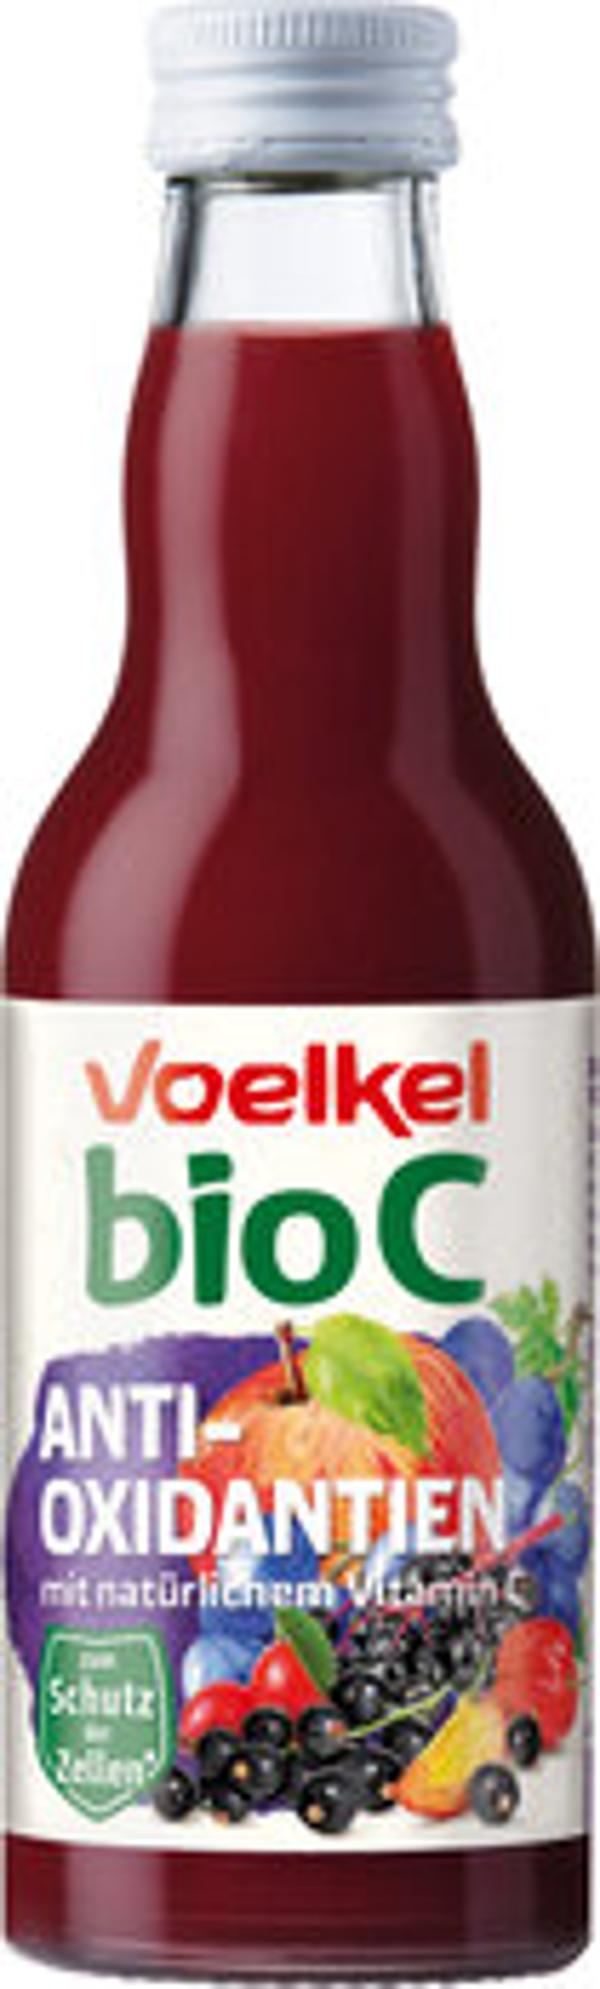 Produktfoto zu Saft bioC Antioxidantien 200ml